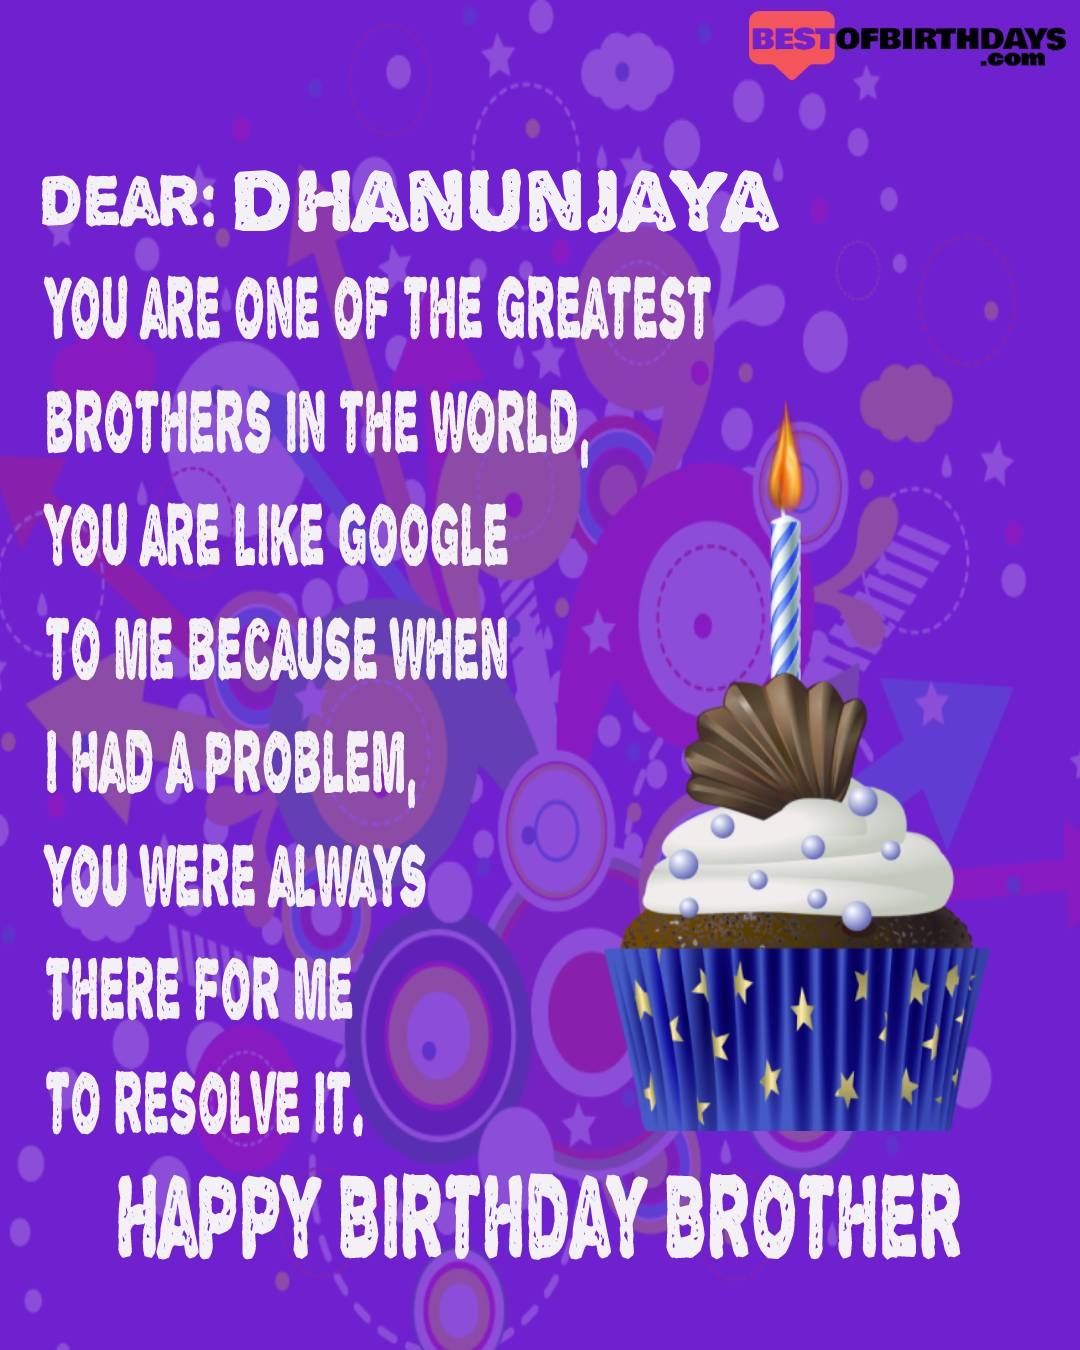 Happy birthday dhanunjaya bhai brother bro